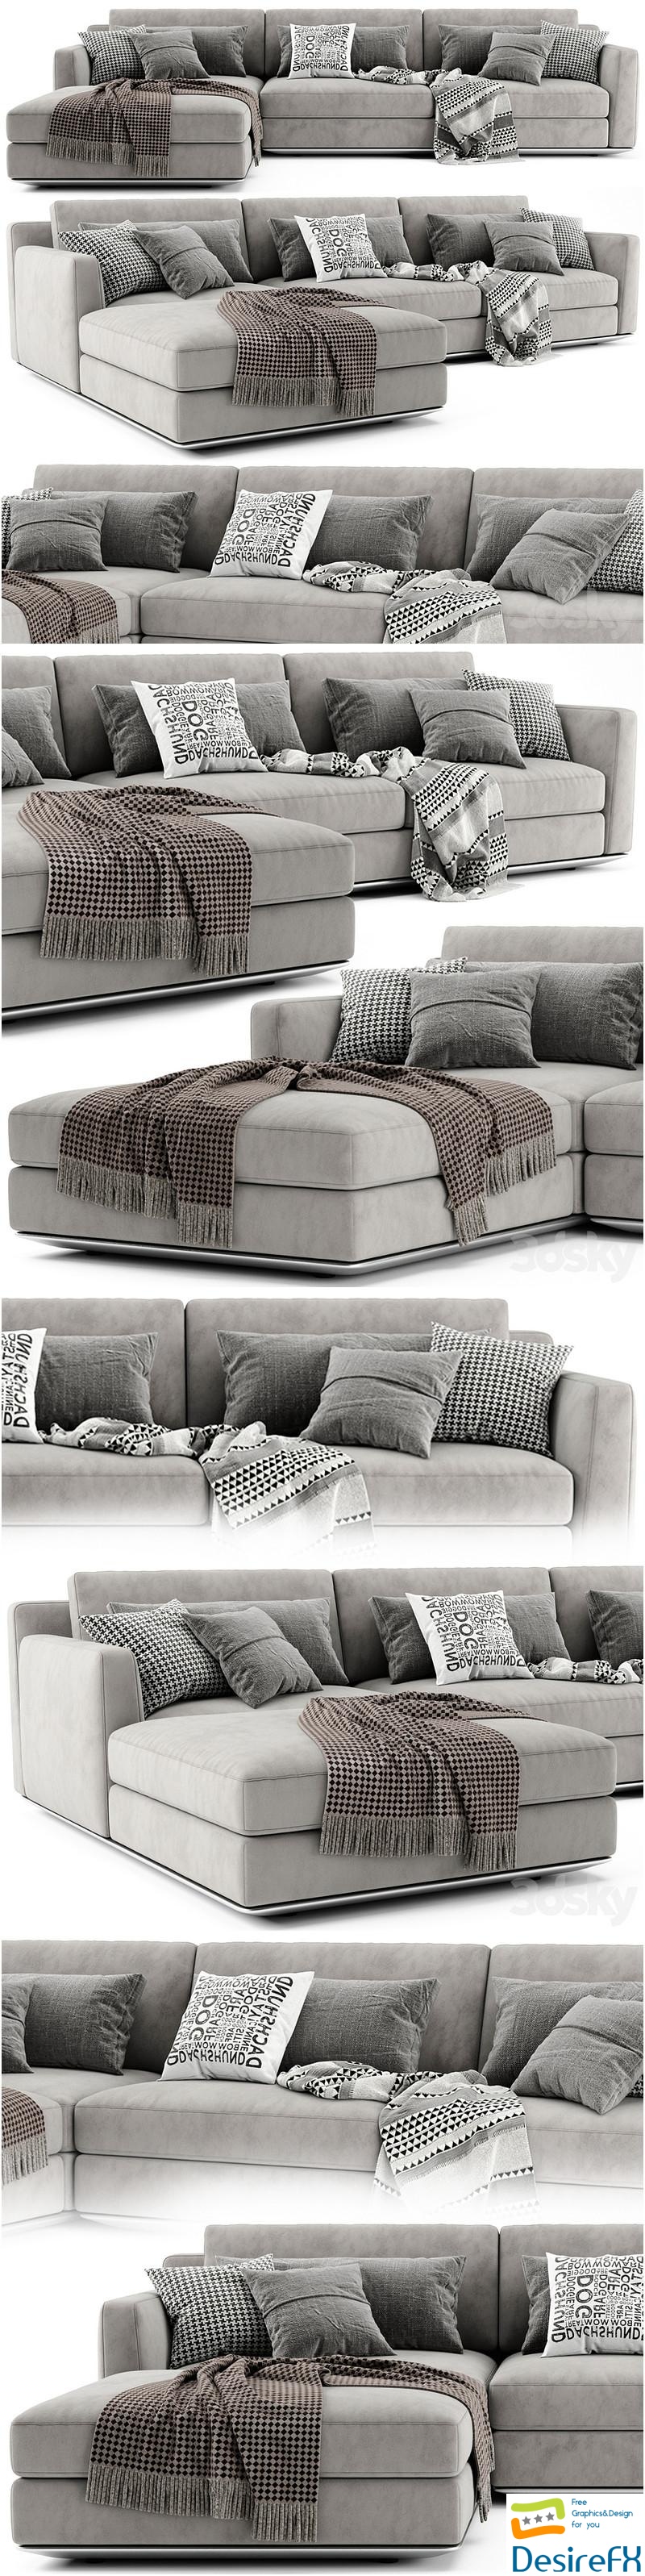 Horm Ellington Chaise Longue Sofa 002 3D Model